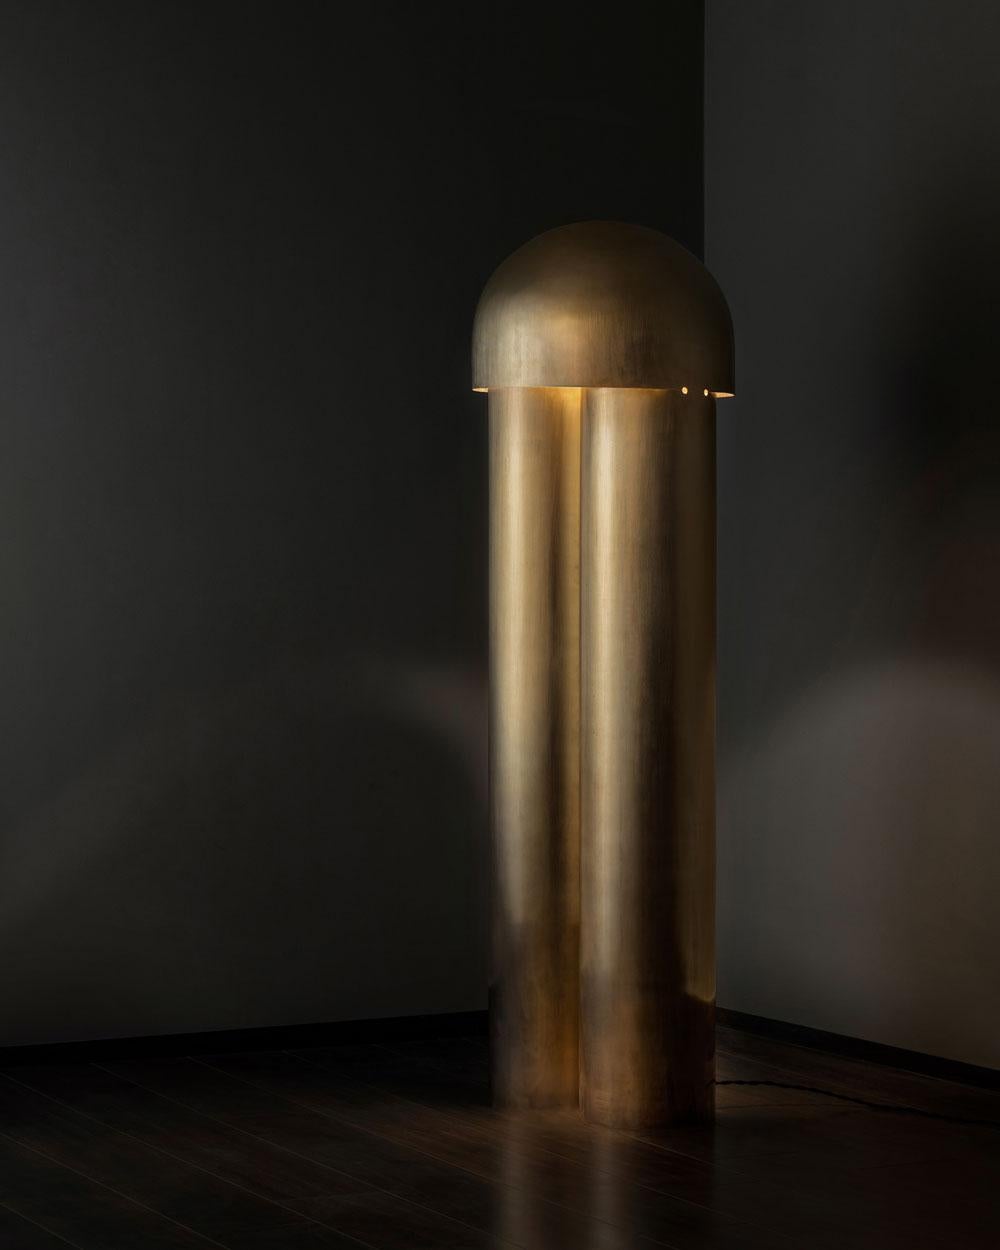 La lampe Monolith est un exercice de réduction. Sculptées à partir d'un seul corps à l'aide de partitions et de plis simples, la géométrie des lampes, la texture de la surface et la finition du matériau permettent des interactions apaisantes avec la